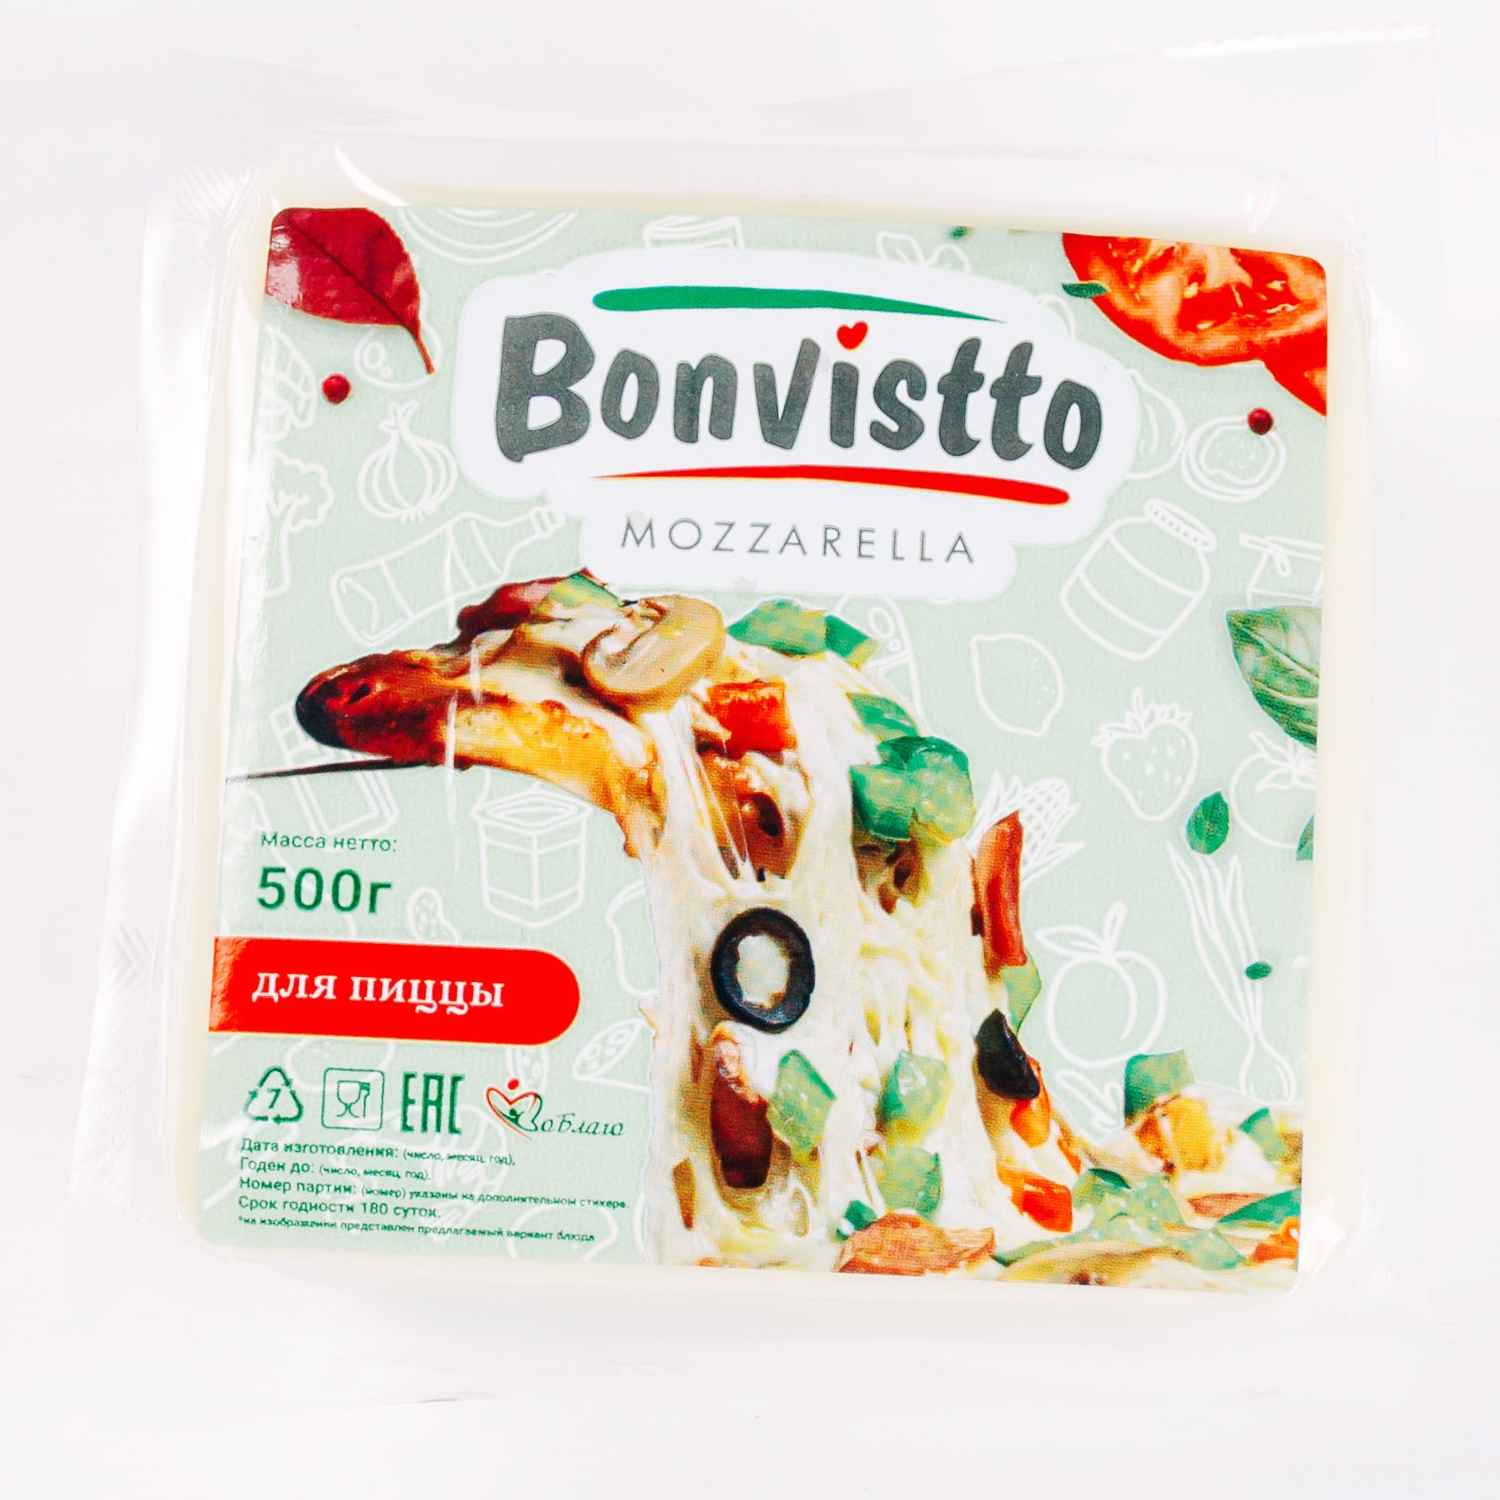 Моцарелла "Bonvistto" 40% фасованный 0,5 кг